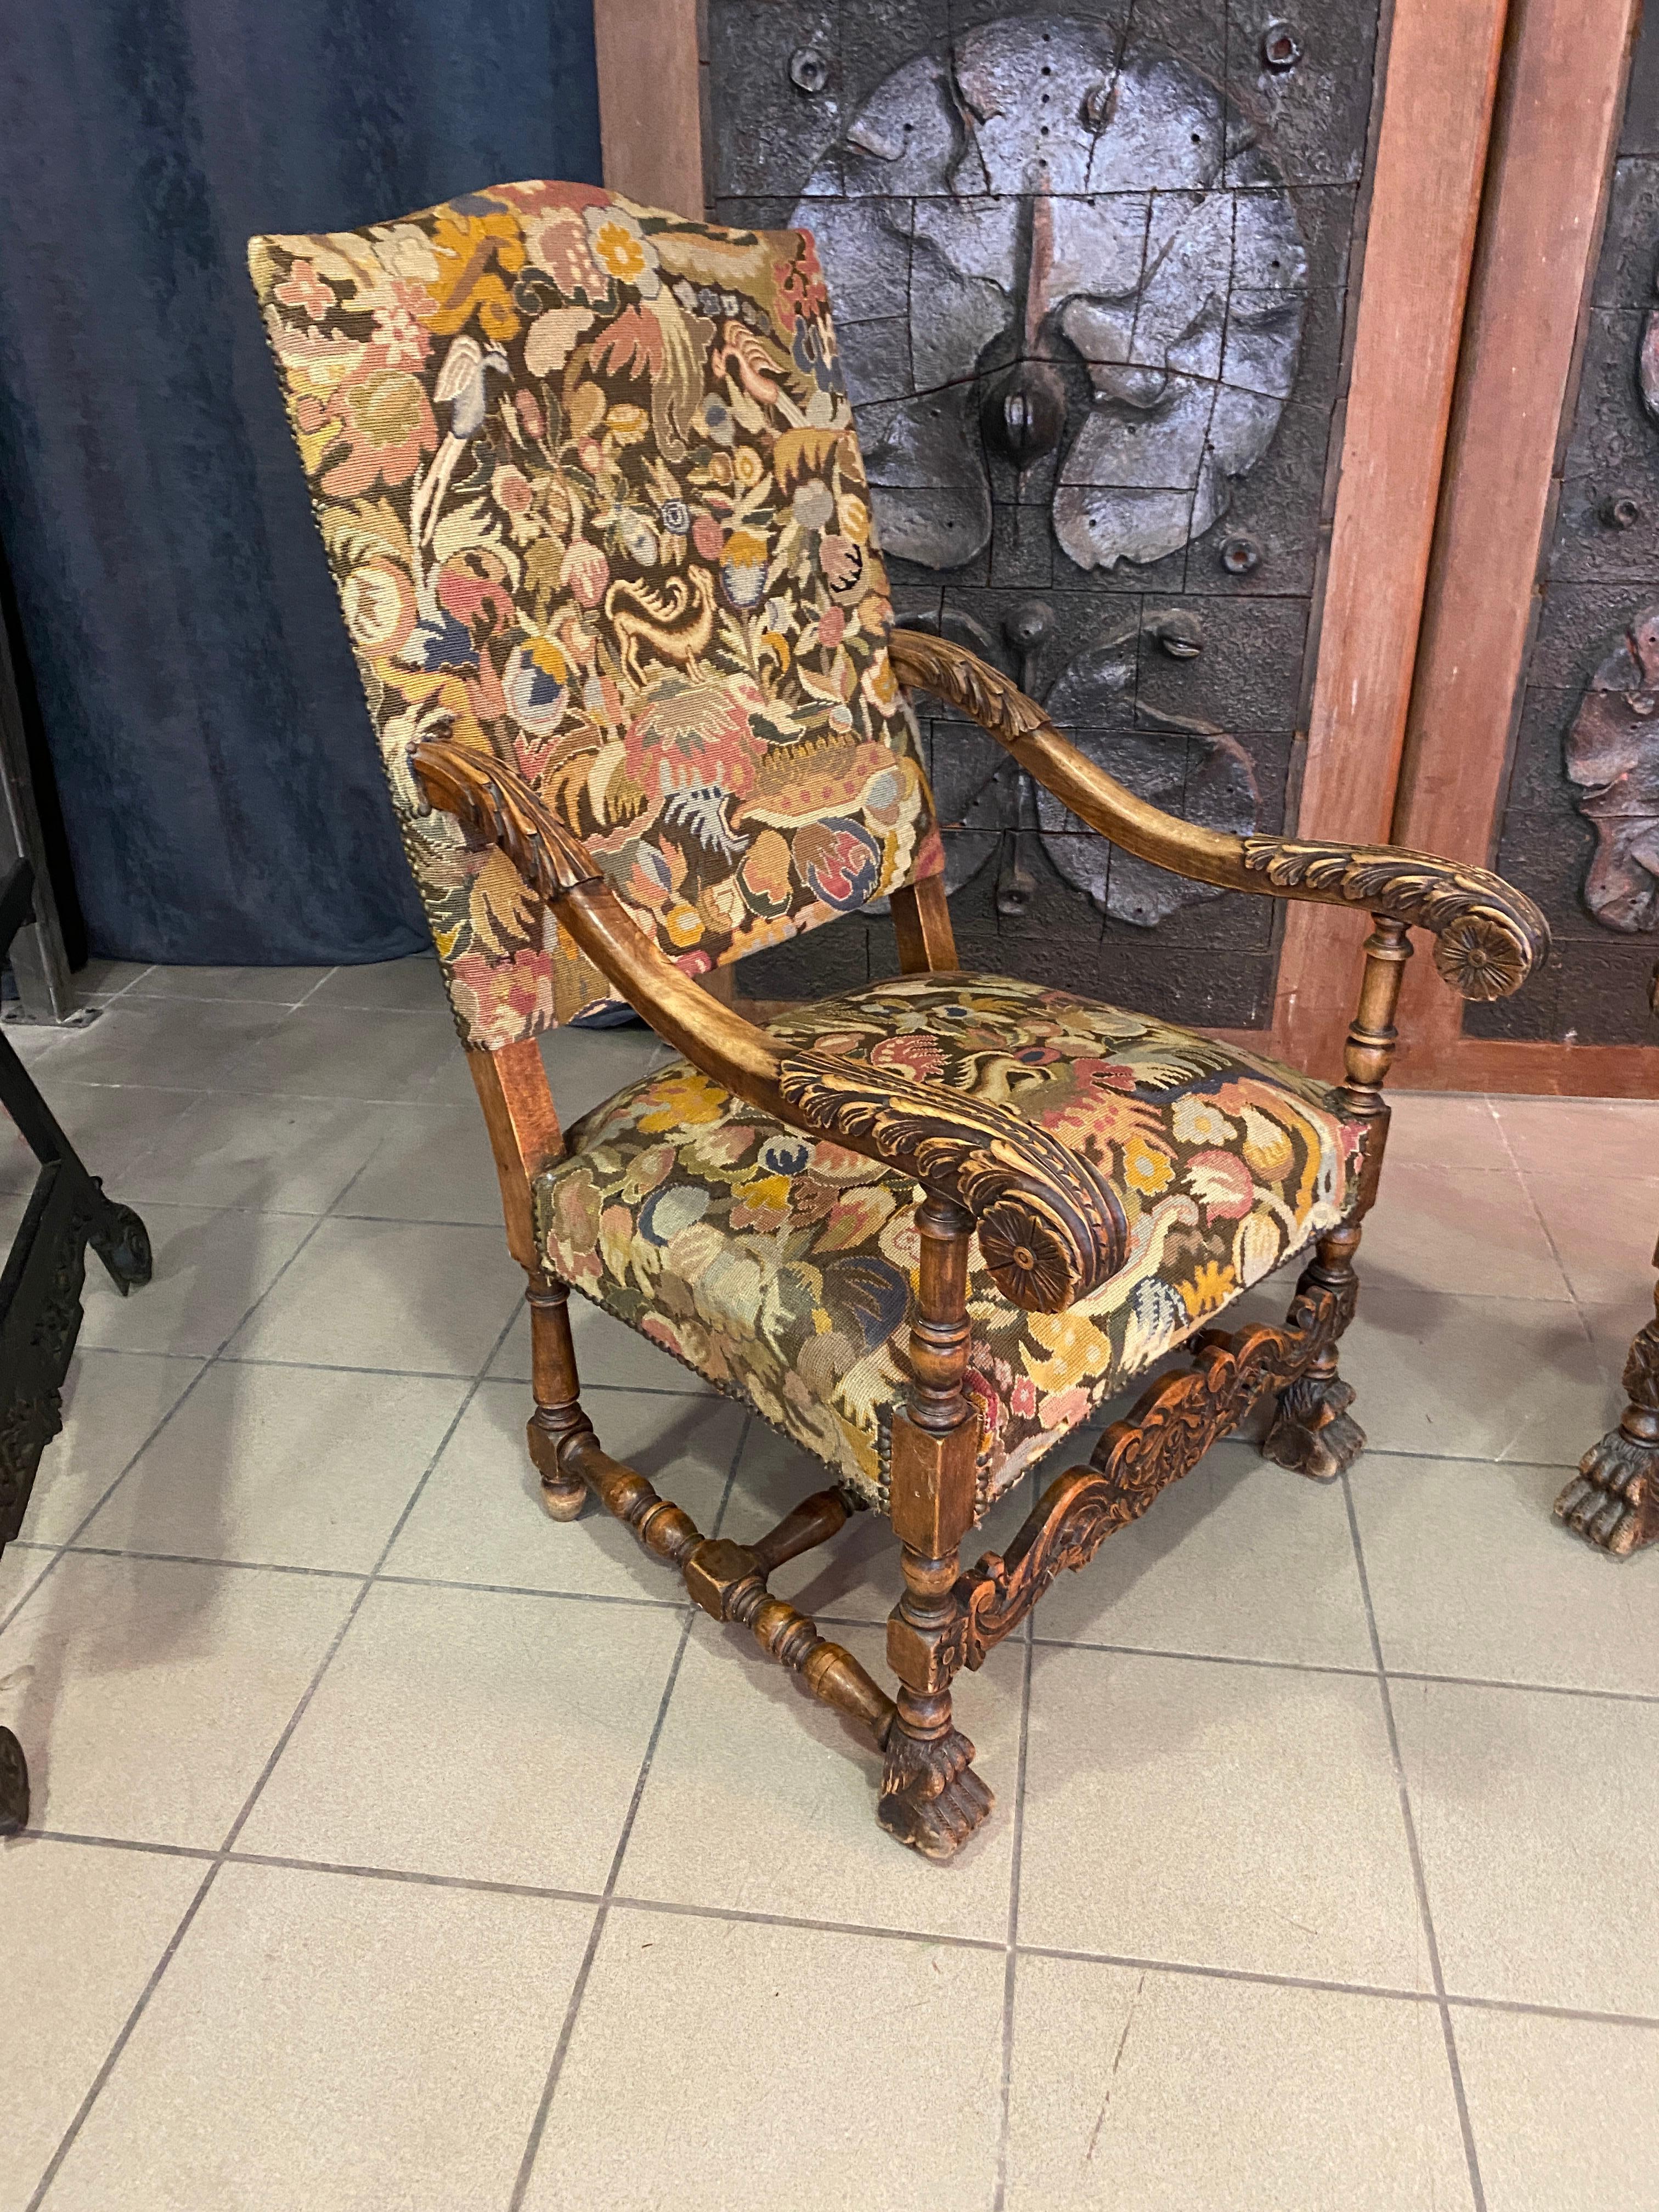 deux fauteuils de style Louis XIII, vers 1900
Tapisserie différente sur chaque fauteuil.
Les tapisseries avec des oiseaux et des animaux fantastiques sont en bon état et peuvent être réutilisées ; en revanche, les garnitures (sangles et ressorts)